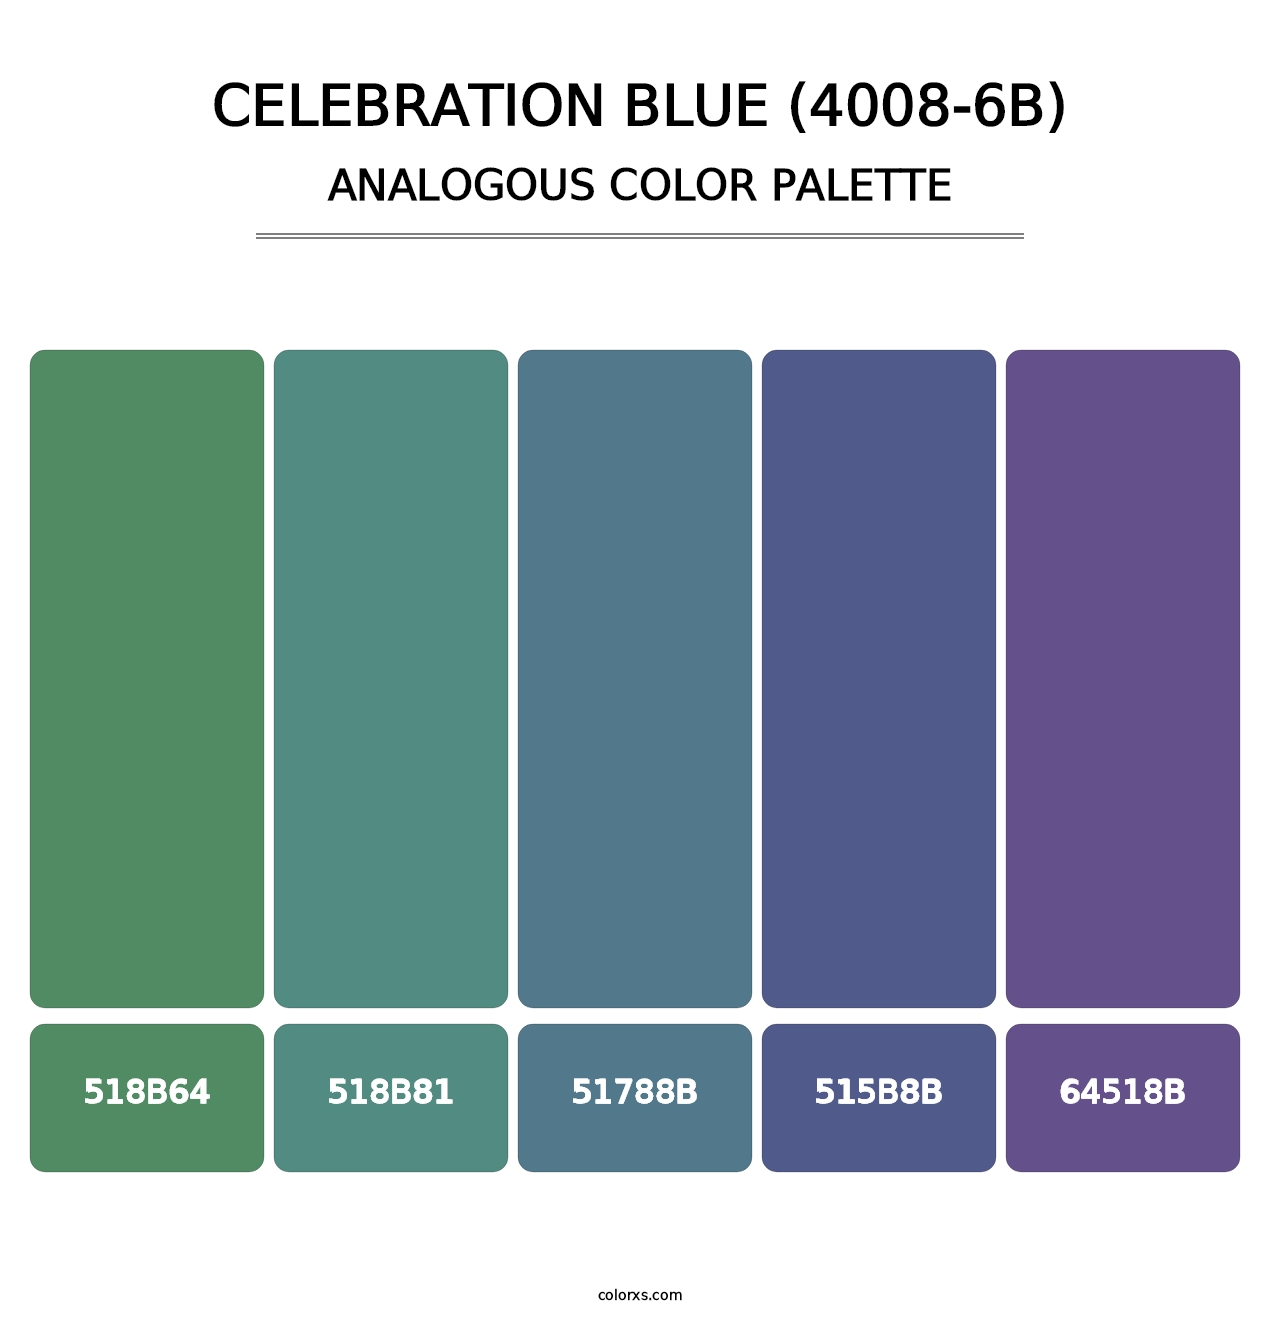 Celebration Blue (4008-6B) - Analogous Color Palette